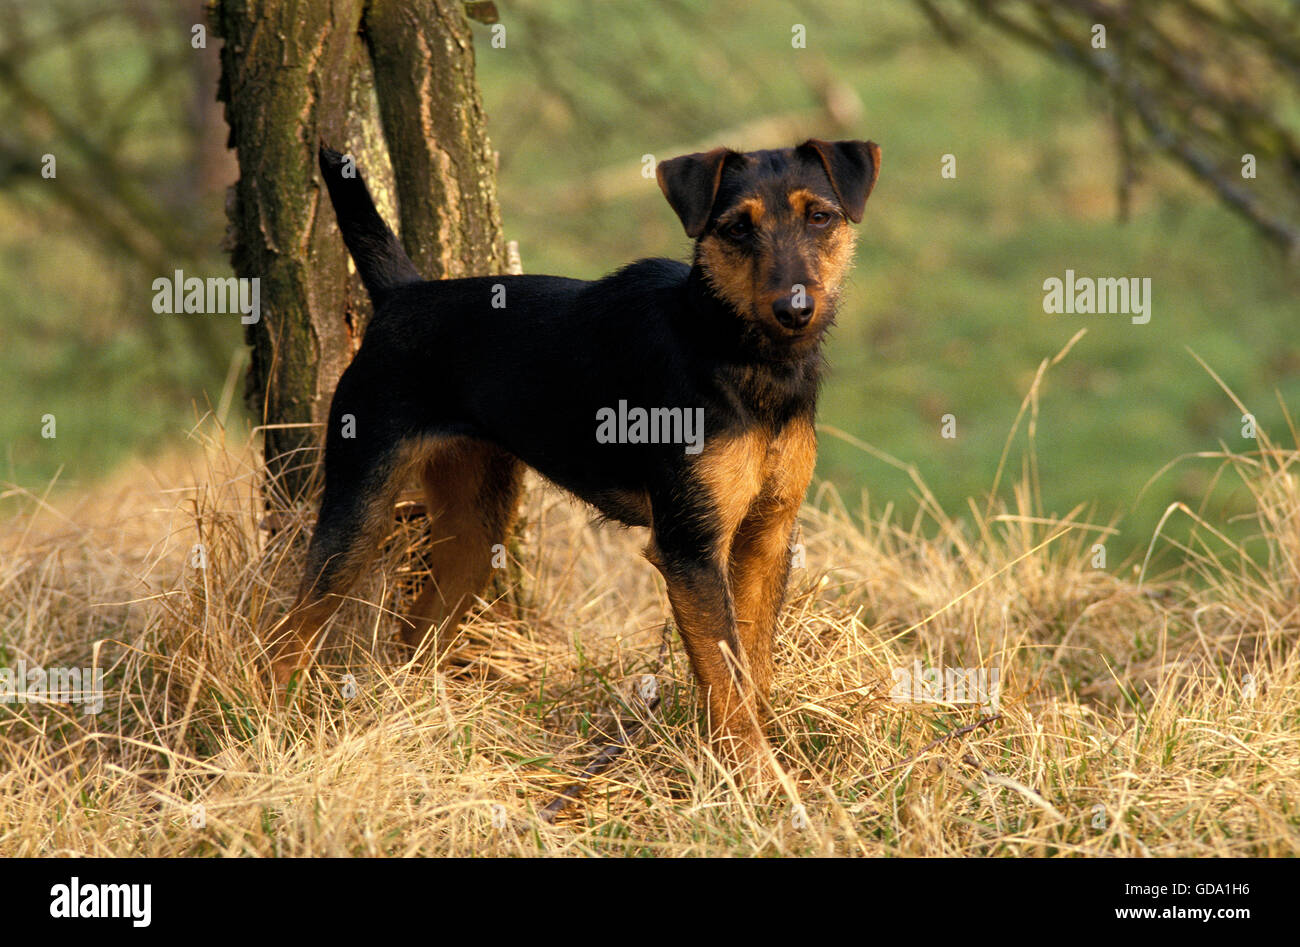 Jagd Terrier alemán de caza o perro terrier Foto de stock